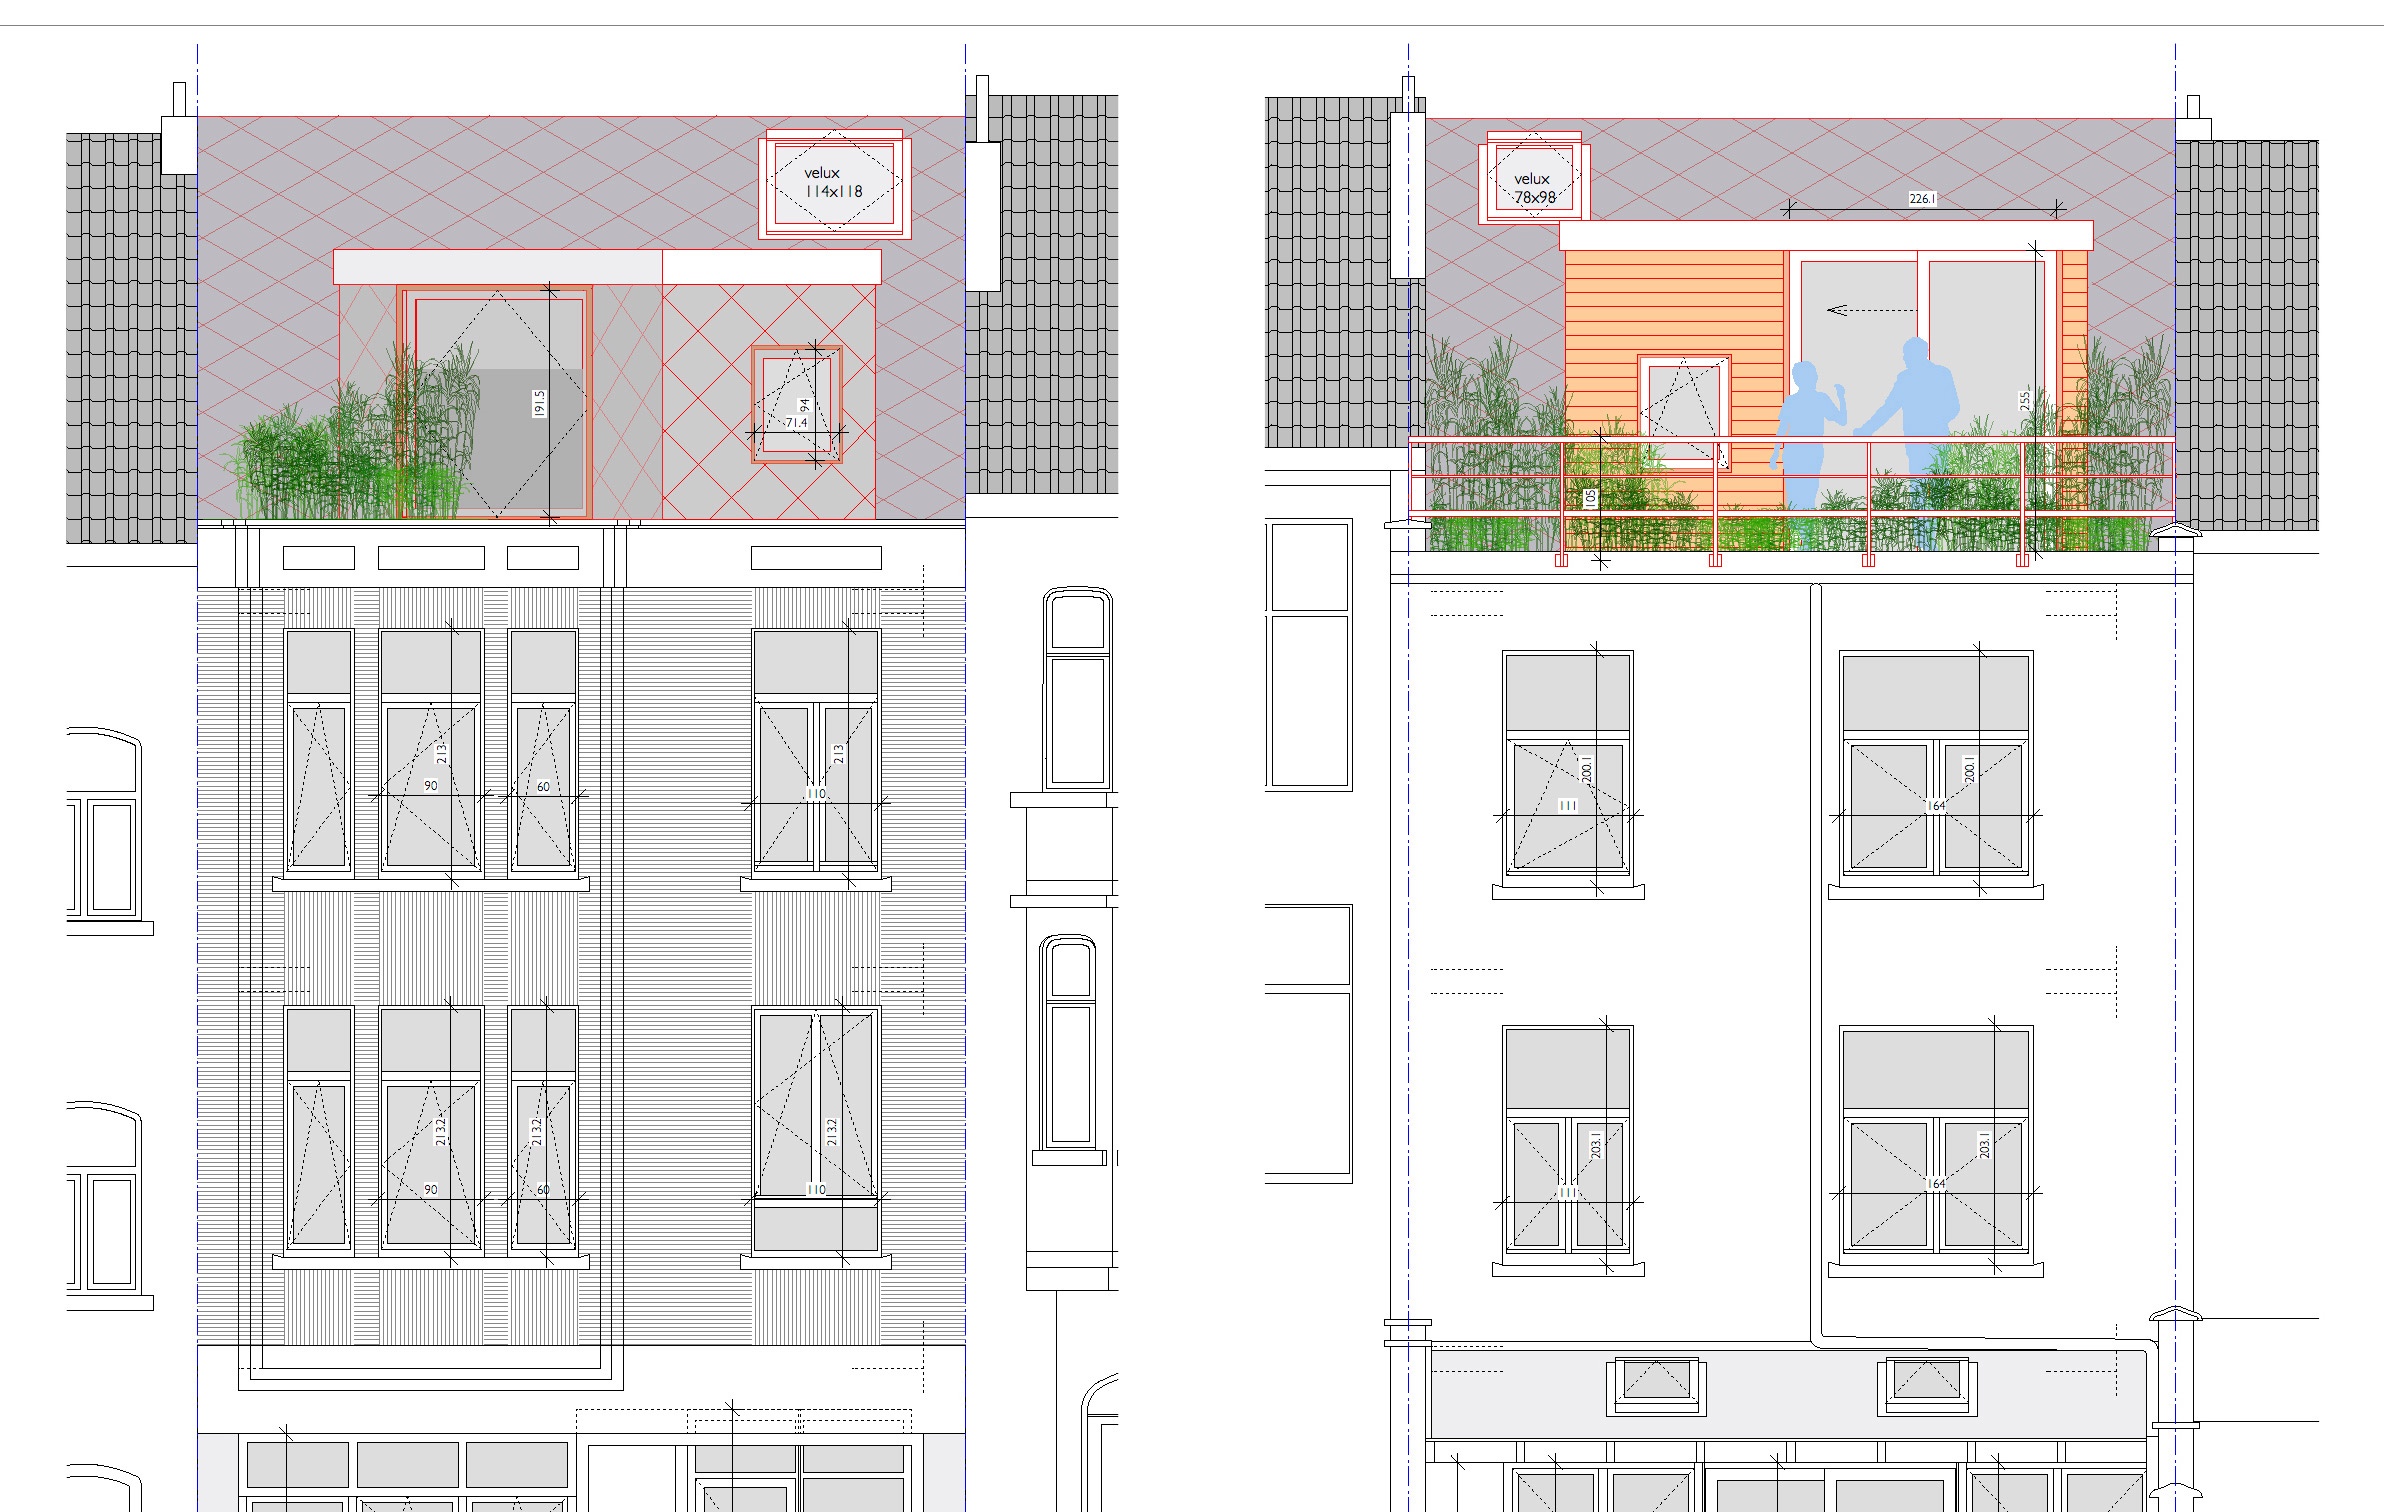 élevation des façades rue et jardin avec le dernier niveau, celui du projet, souligné par l'utilisation de la couleur